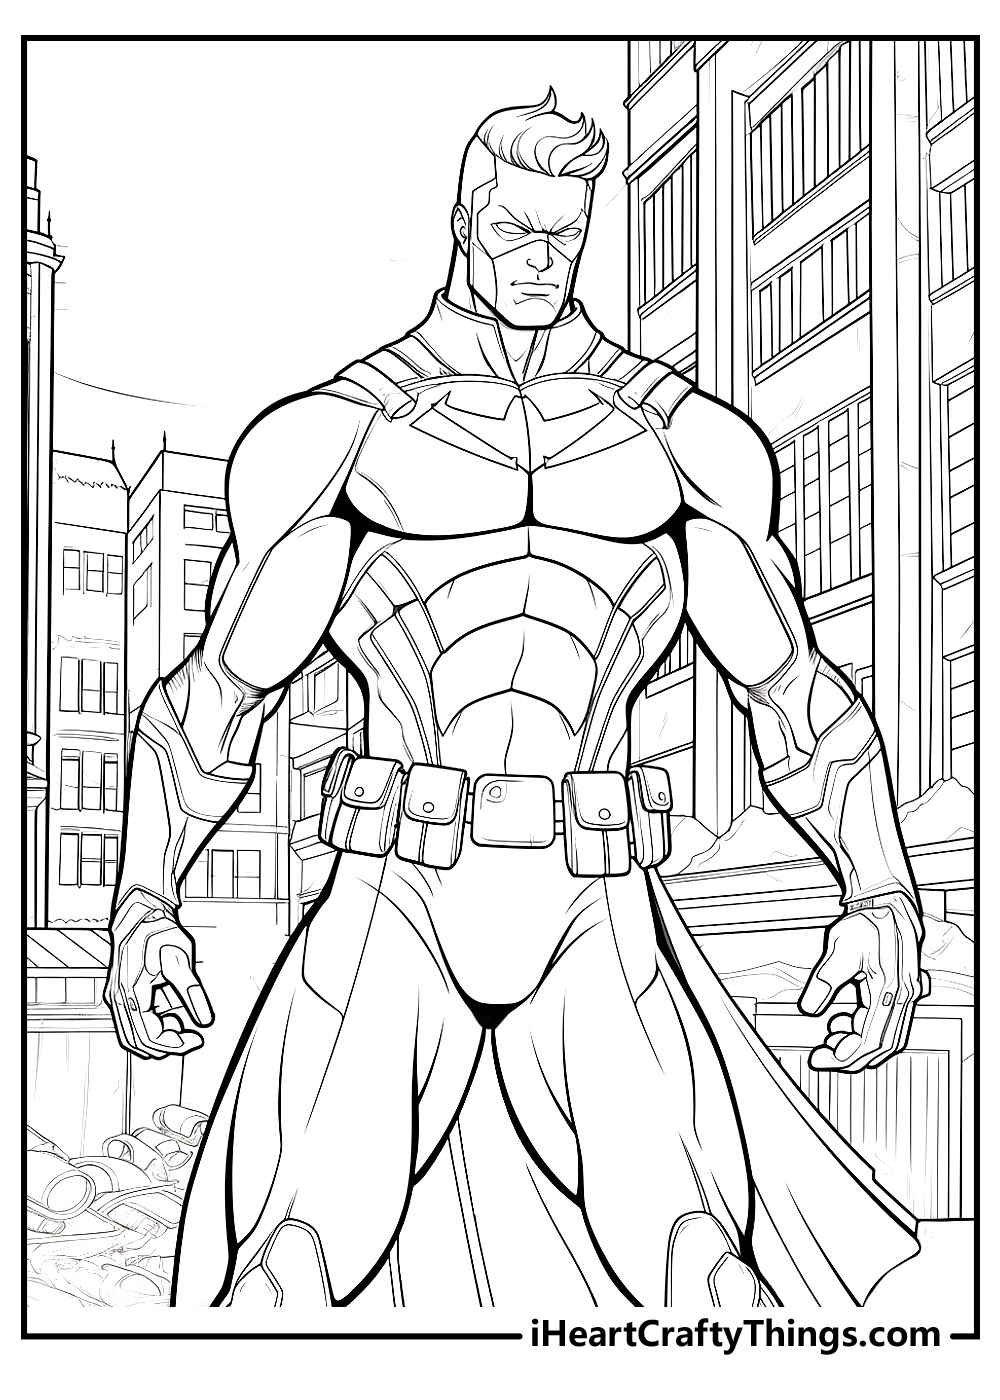 superhero coloring sheet free download